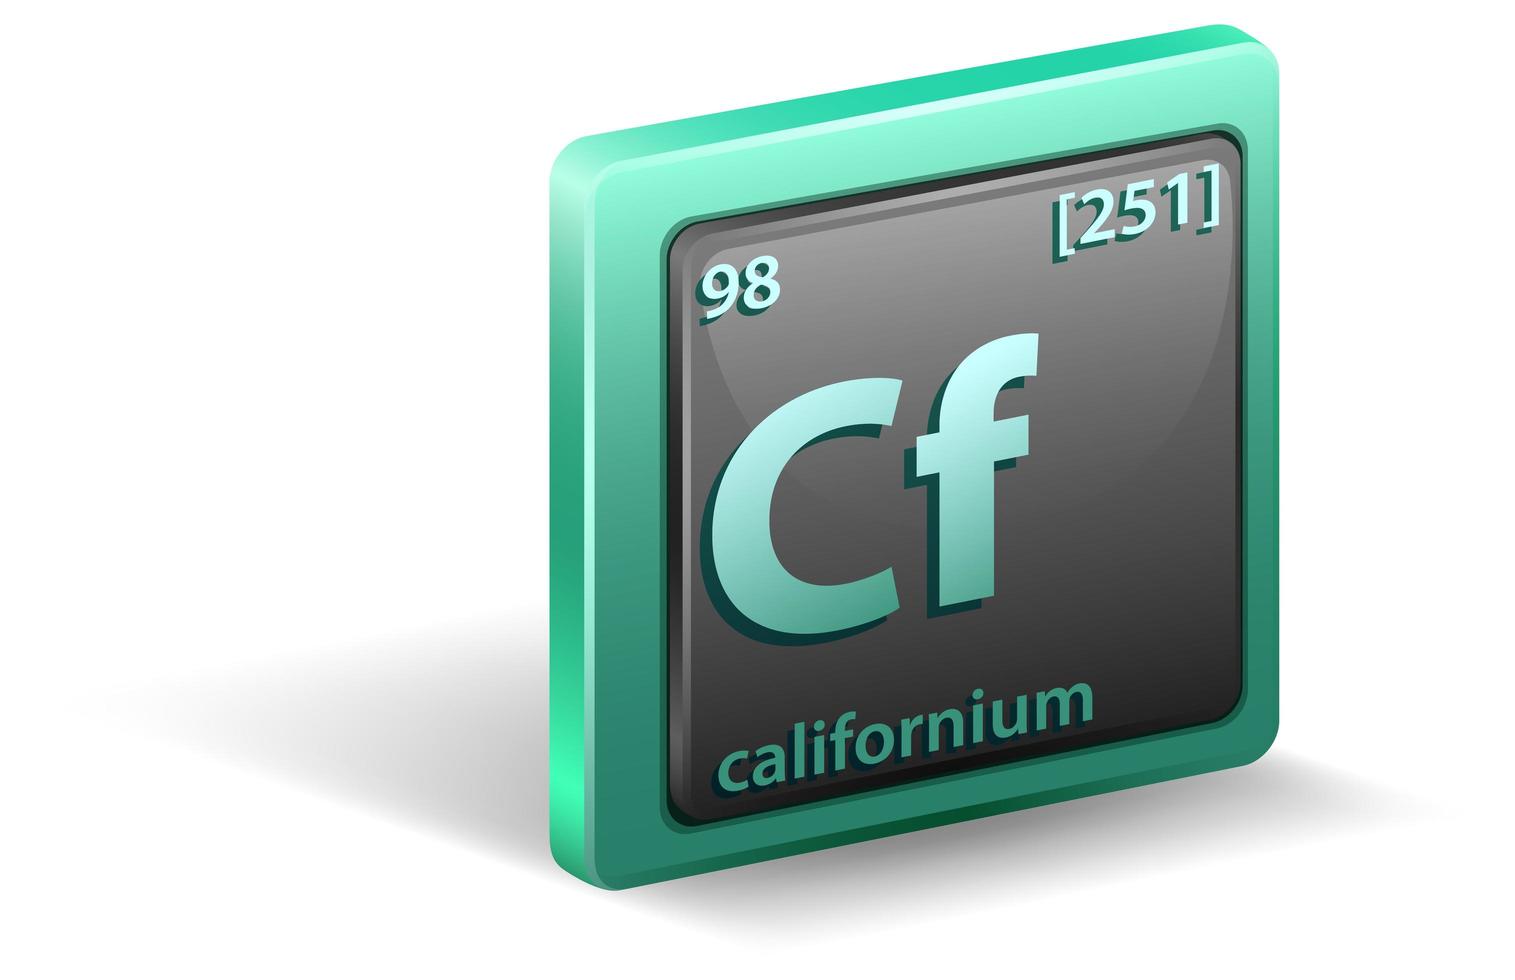 Kalifornisches chemisches Element. chemisches Symbol mit Ordnungszahl und Atommasse. vektor